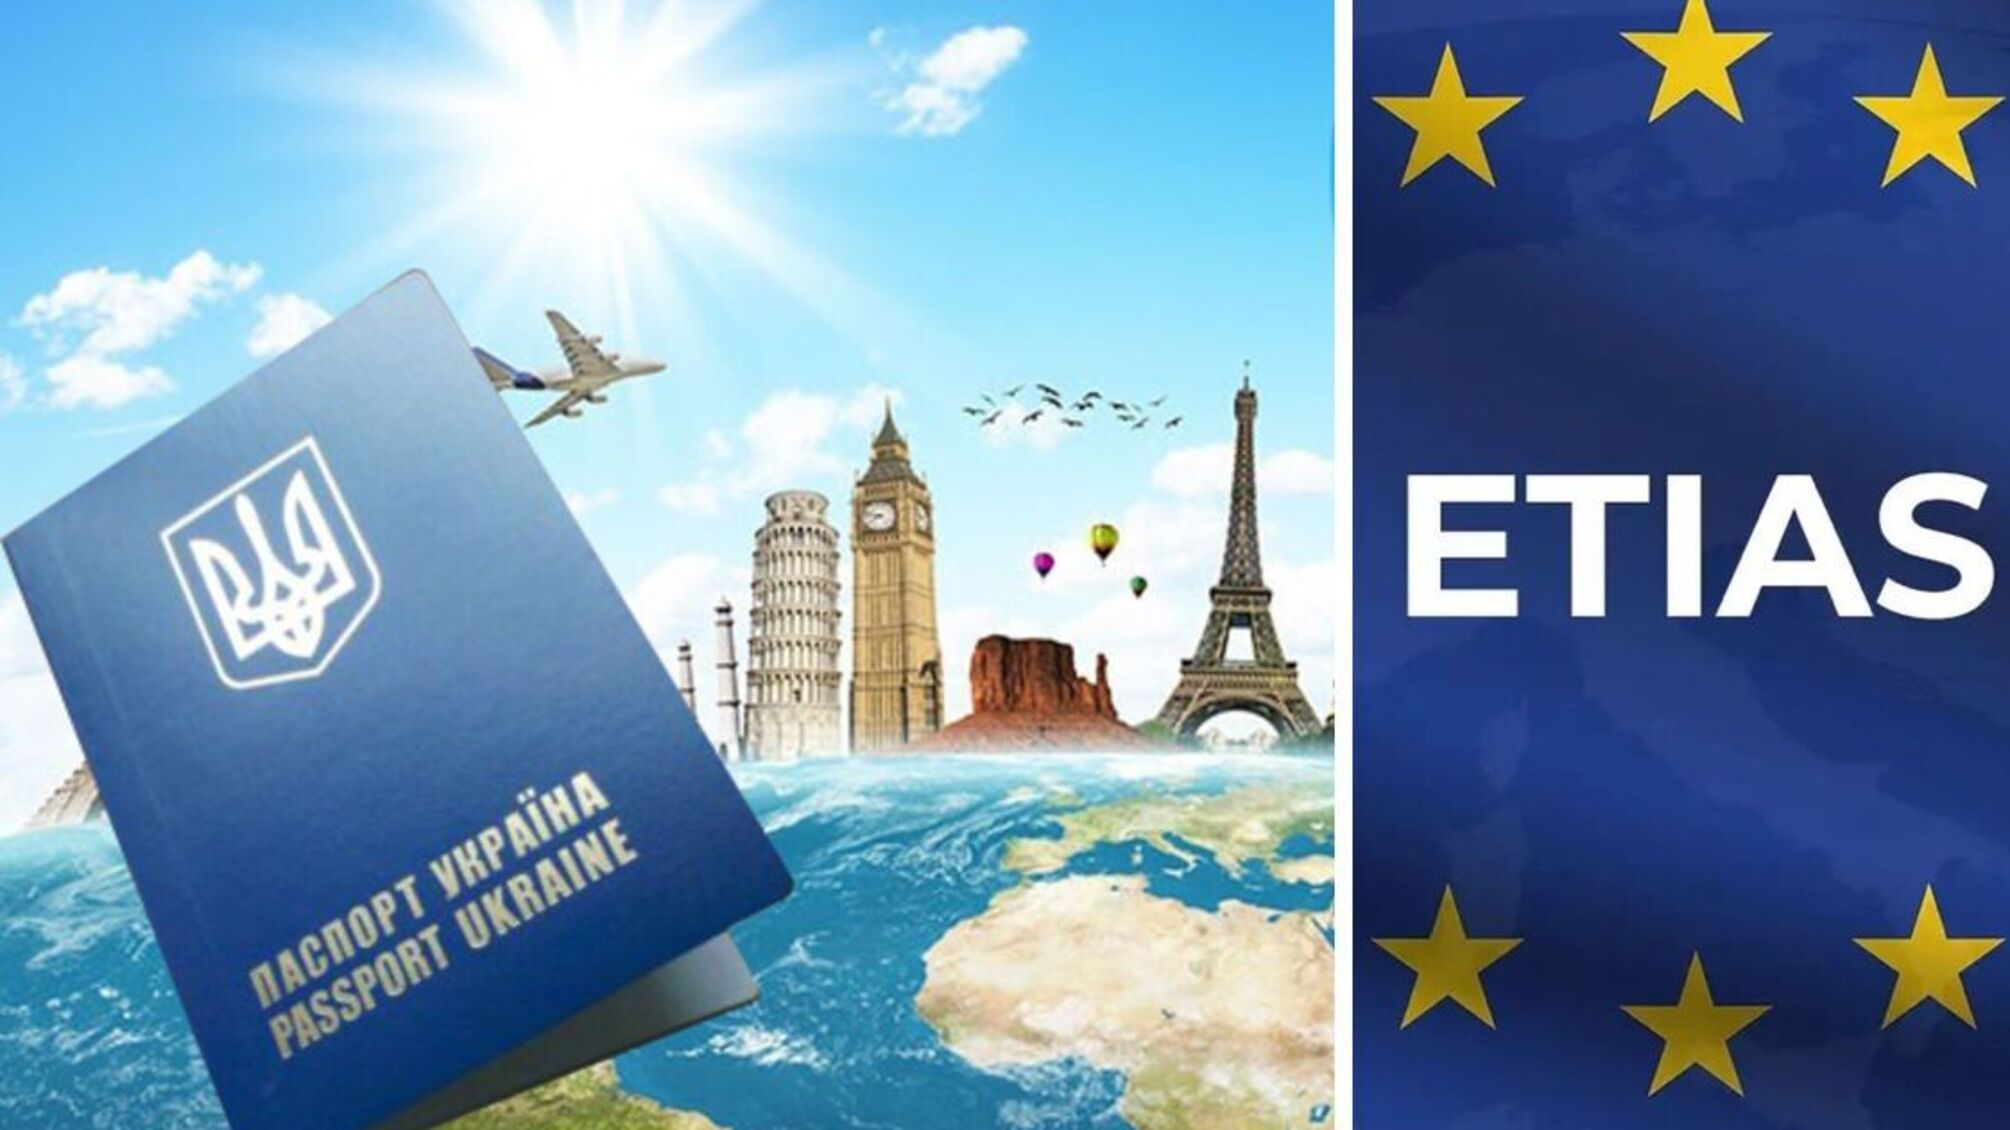 Со следующего года въезд в ЕС будет платным: стоимость разрешения будет составлять семь евро с человека — сайт Евросоюза